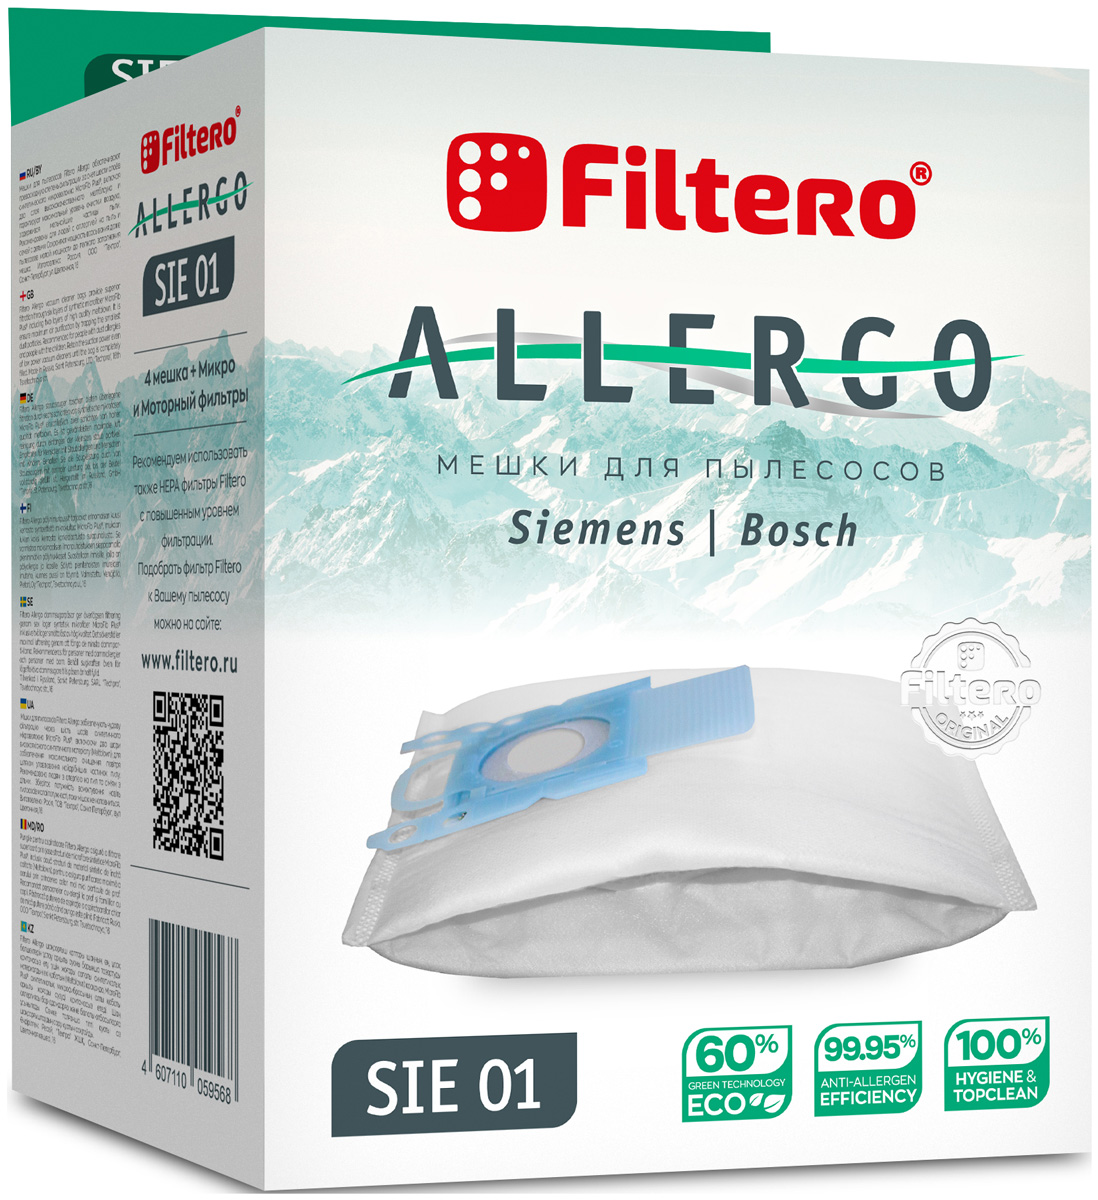 Пылесборники Filtero SIE 01 Allergo 4 шт. + моторный фильтр и микрофильтр пылесборники filtero fls 01 s bag allergo 4 шт моторный фильтр и микрофильтр